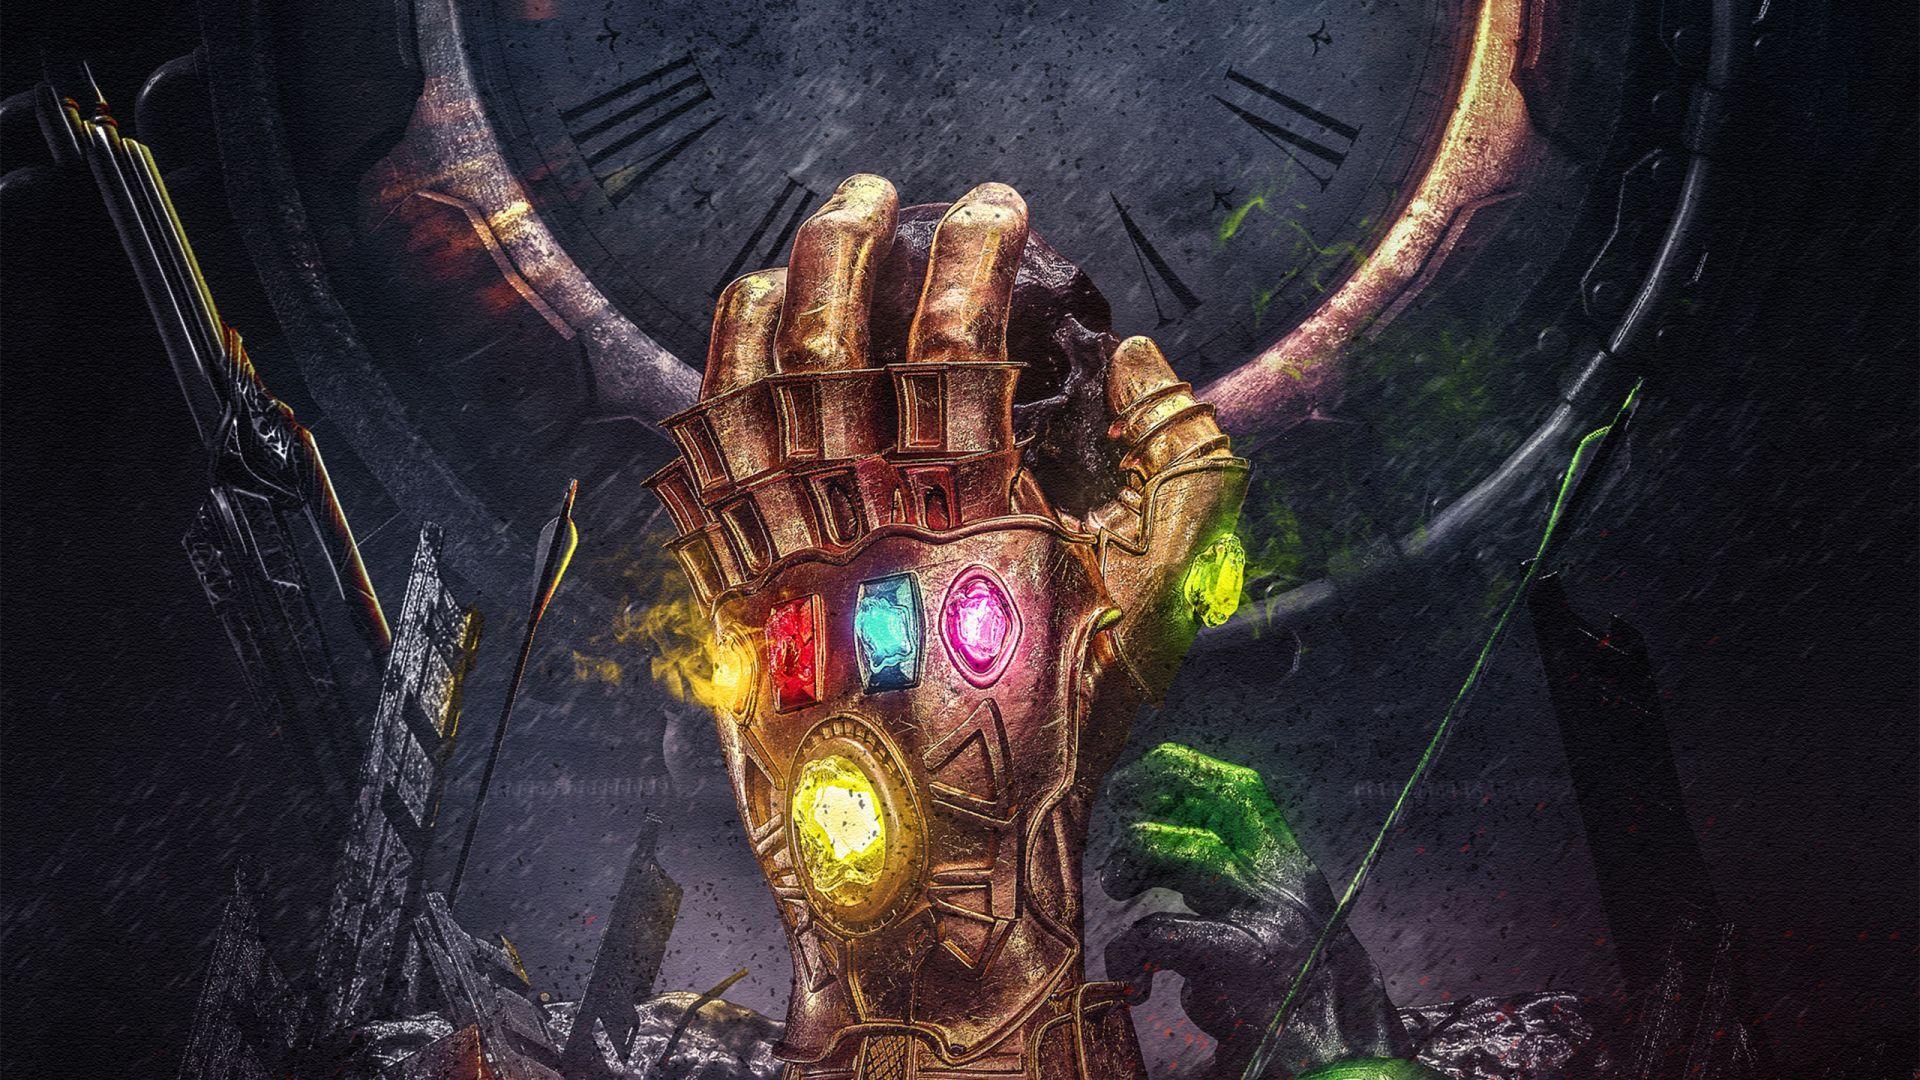 Download wallpaper of Infinity Gauntlet, Thanos, Infinity Stones, Avengers: Infinity War, Marvel Comics, HD, Cr. Art wallpaper, Creative graphics, Hero wallpaper